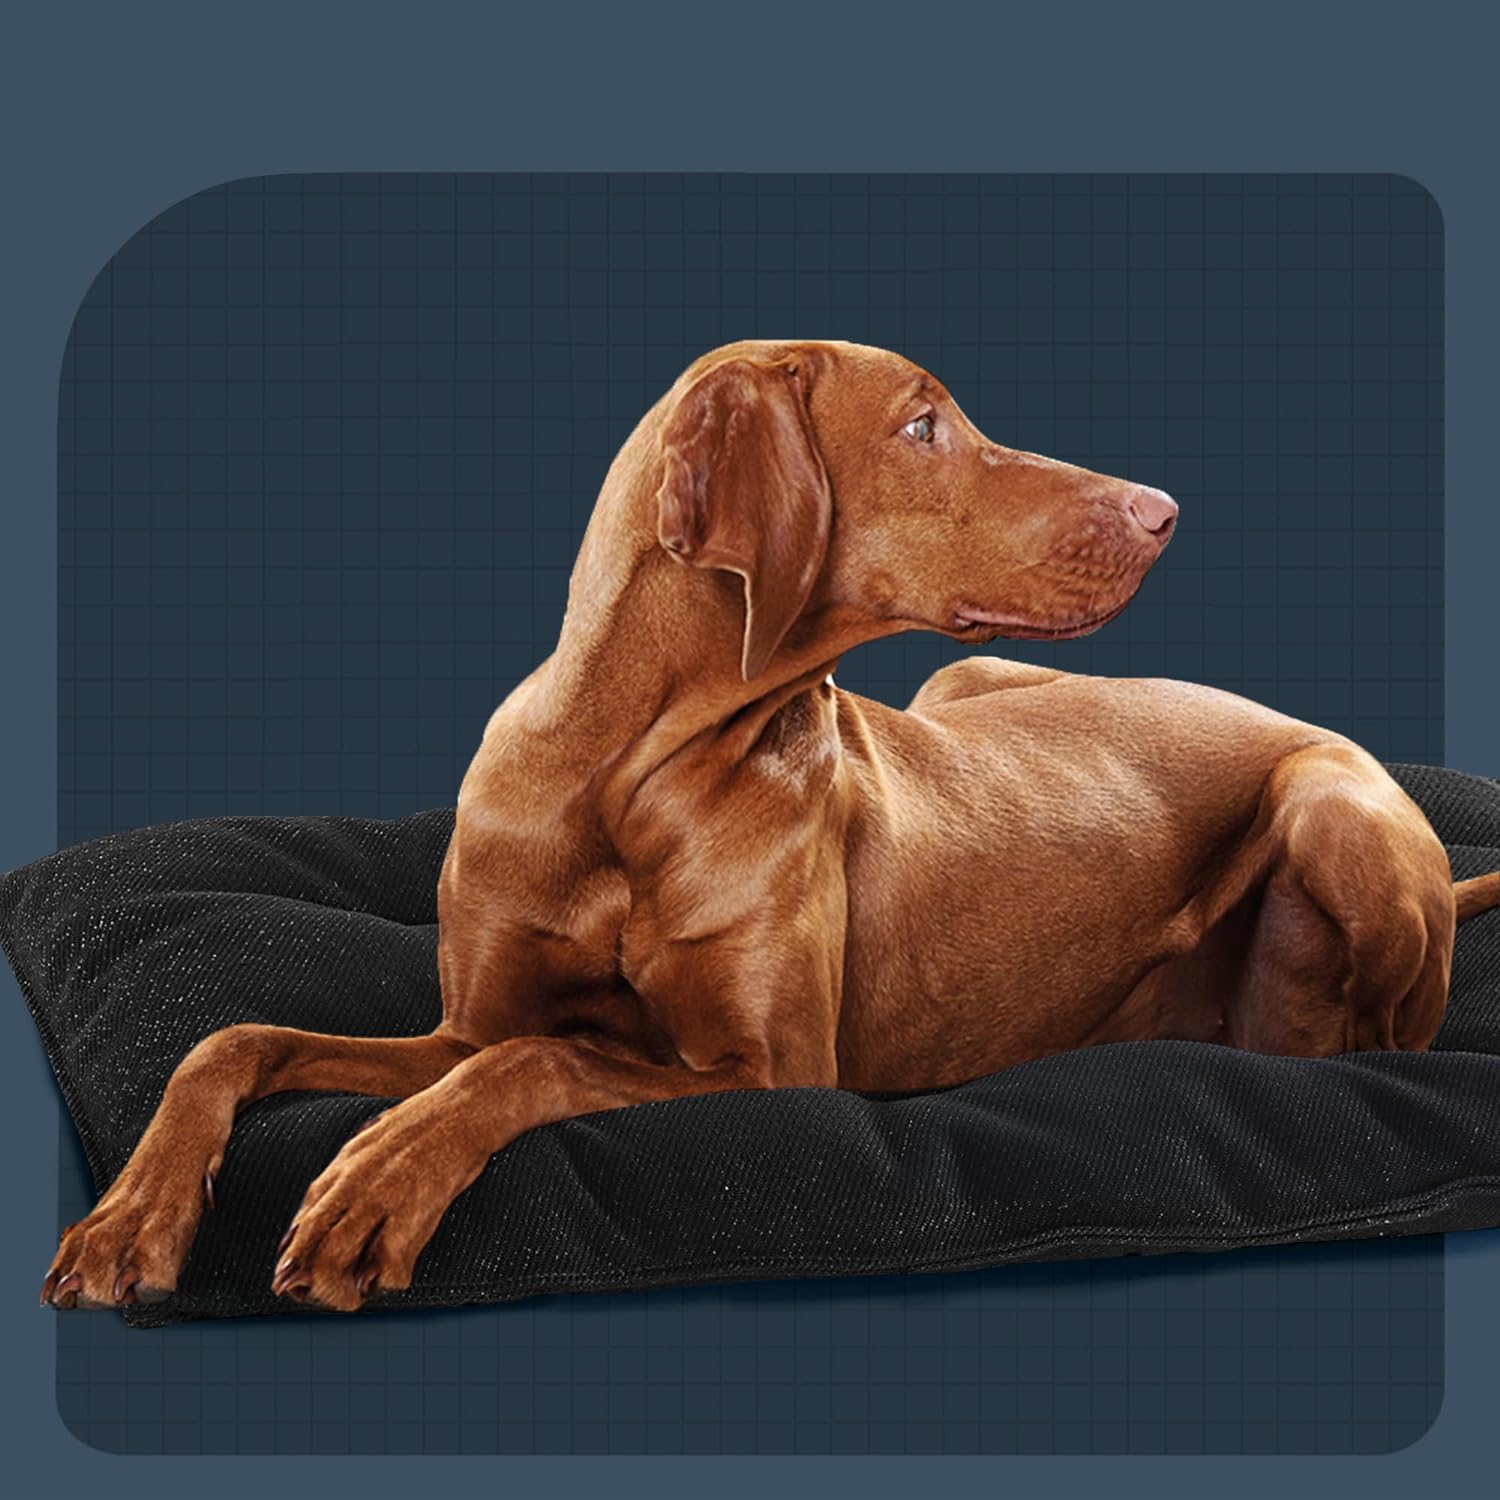 Camas indestructibles para perros a prueba de mordidos, cama duradera para